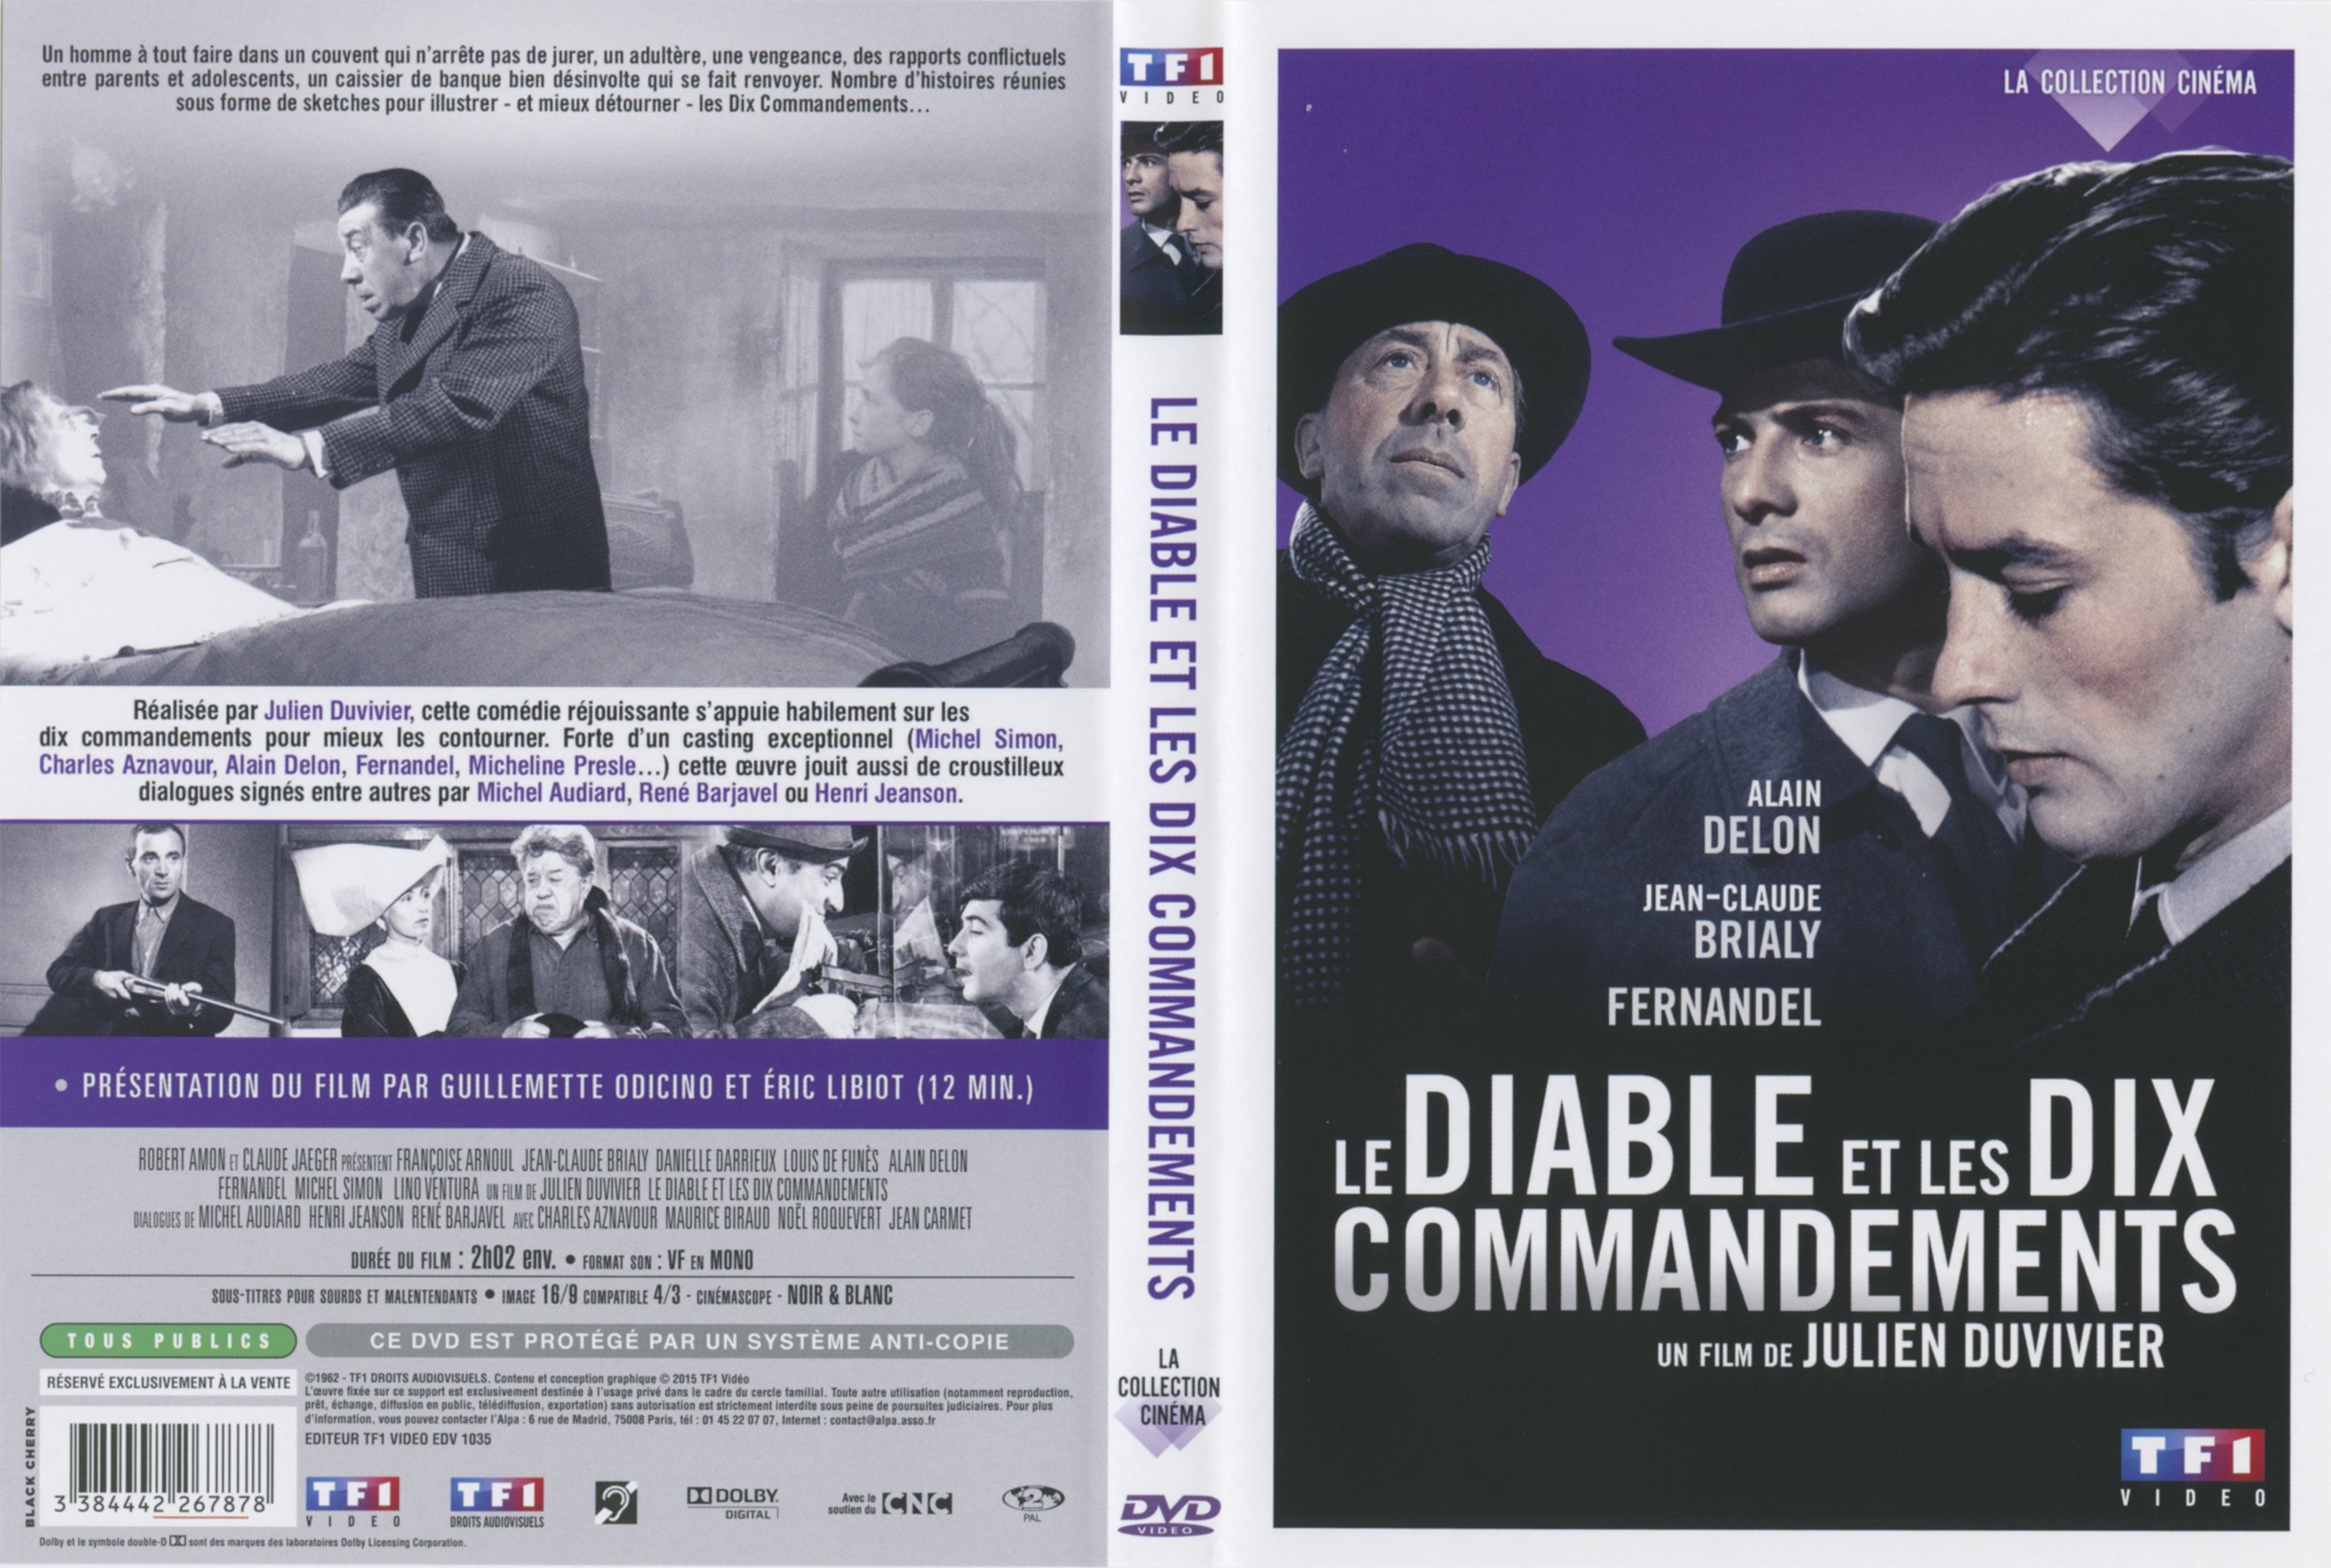 Jaquette DVD Le diable et les dix commandements v2